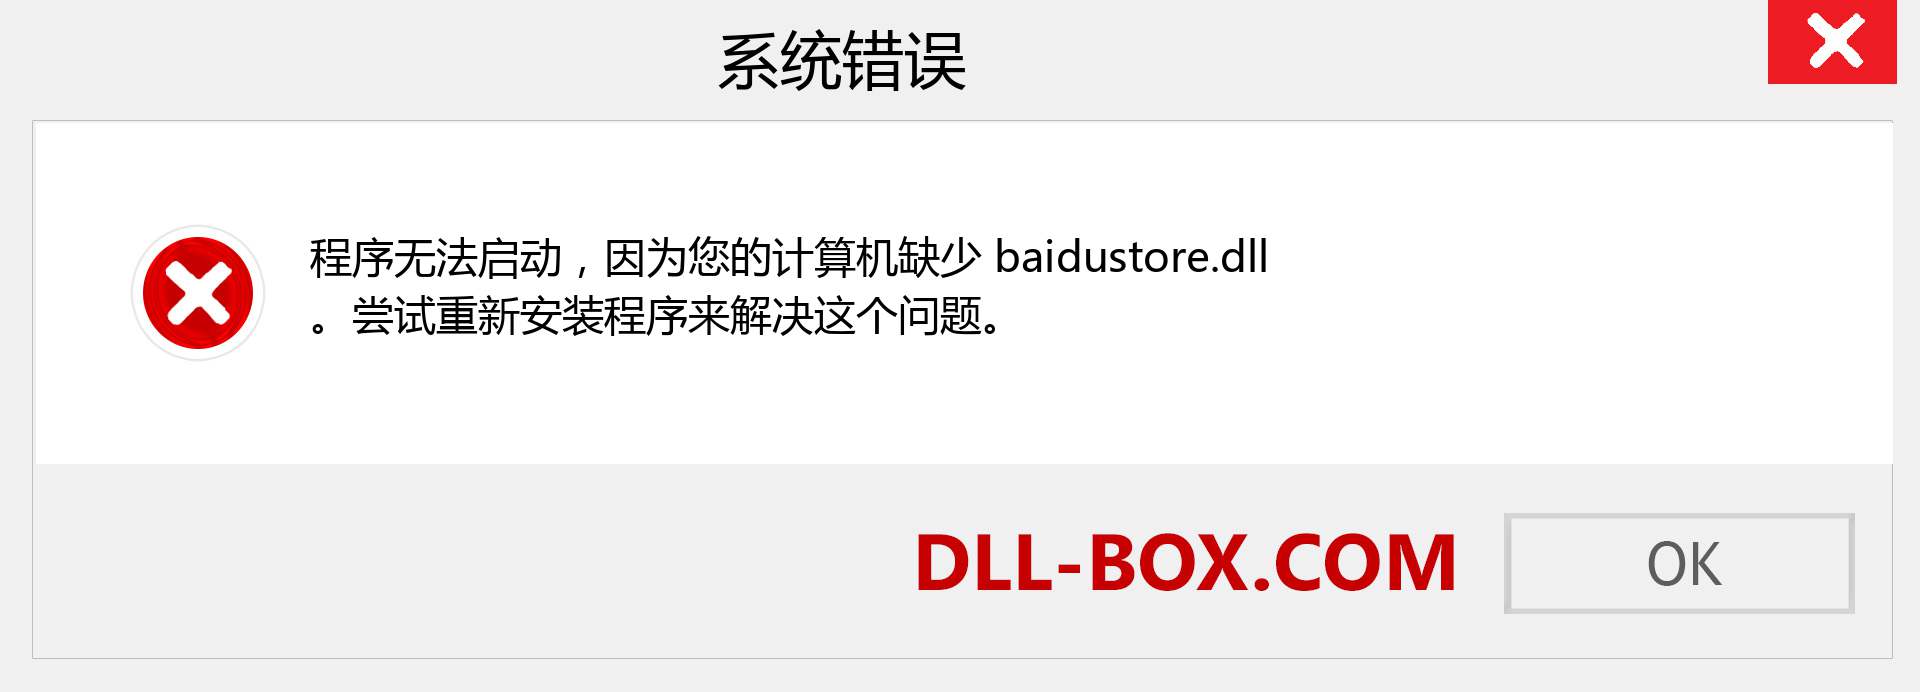 baidustore.dll 文件丢失？。 适用于 Windows 7、8、10 的下载 - 修复 Windows、照片、图像上的 baidustore dll 丢失错误